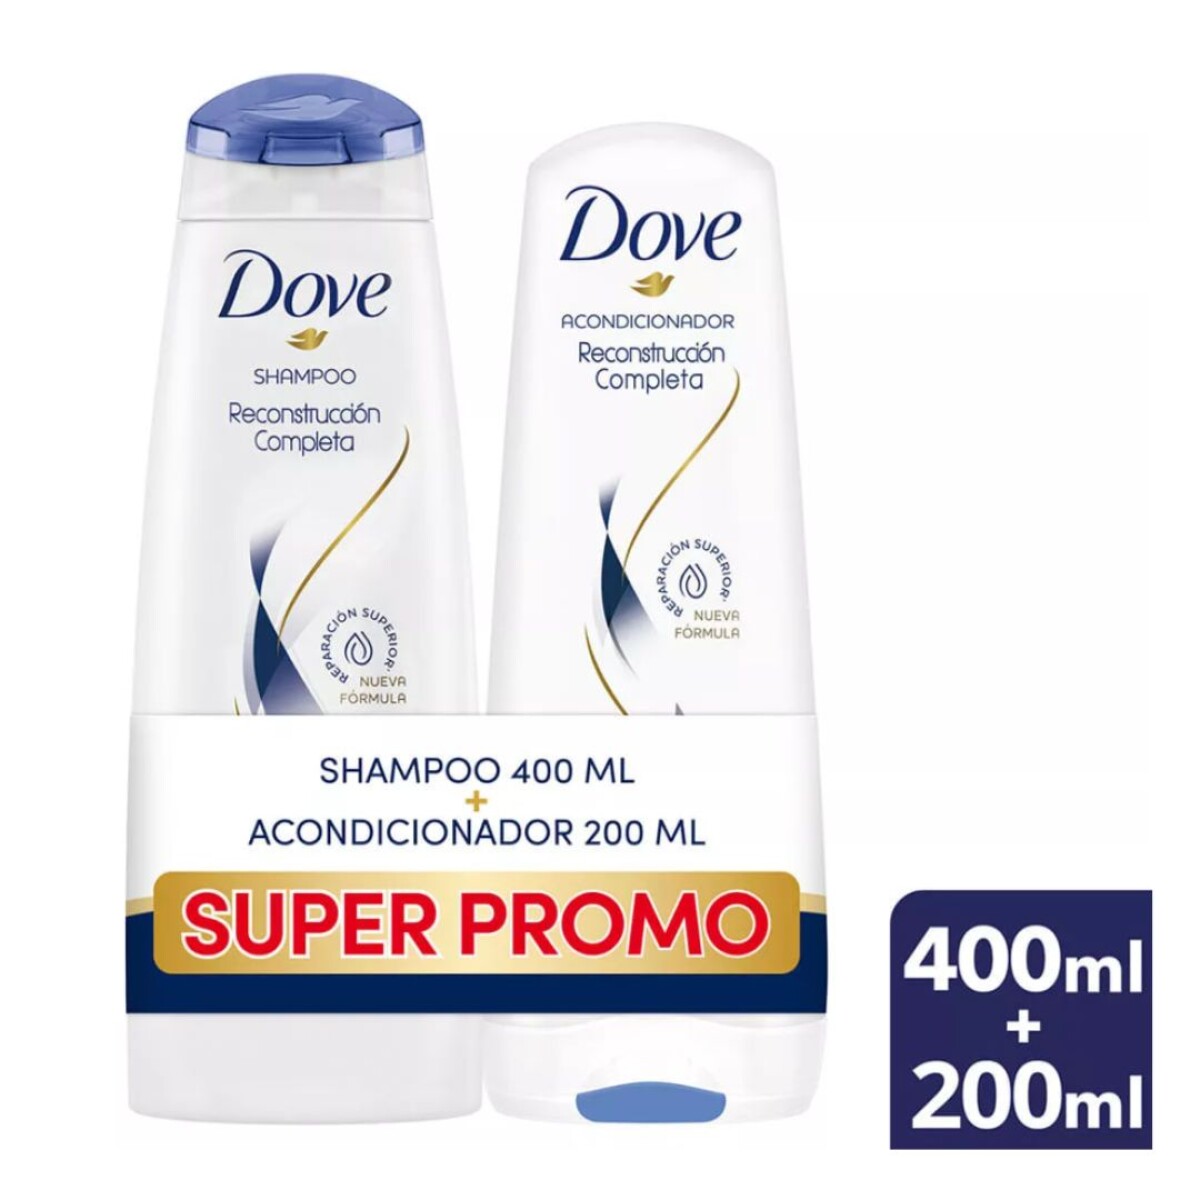 Pack Shampoo Dove Reconstruccion Completa 400 Ml + Acondicionador Dove 